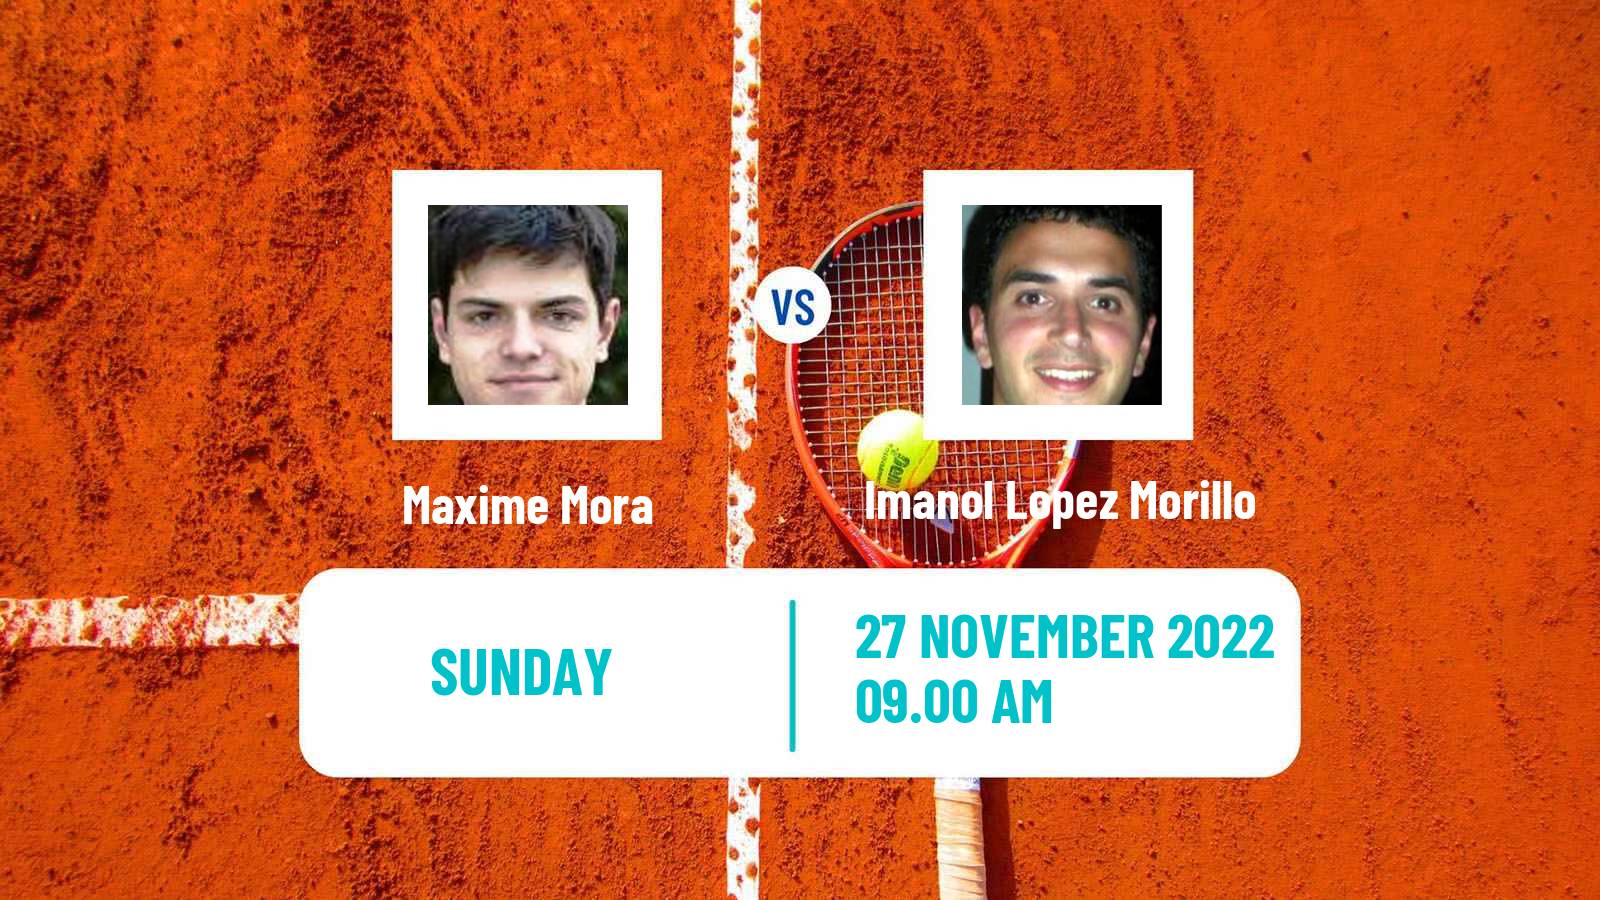 Tennis ATP Challenger Maxime Mora - Imanol Lopez Morillo